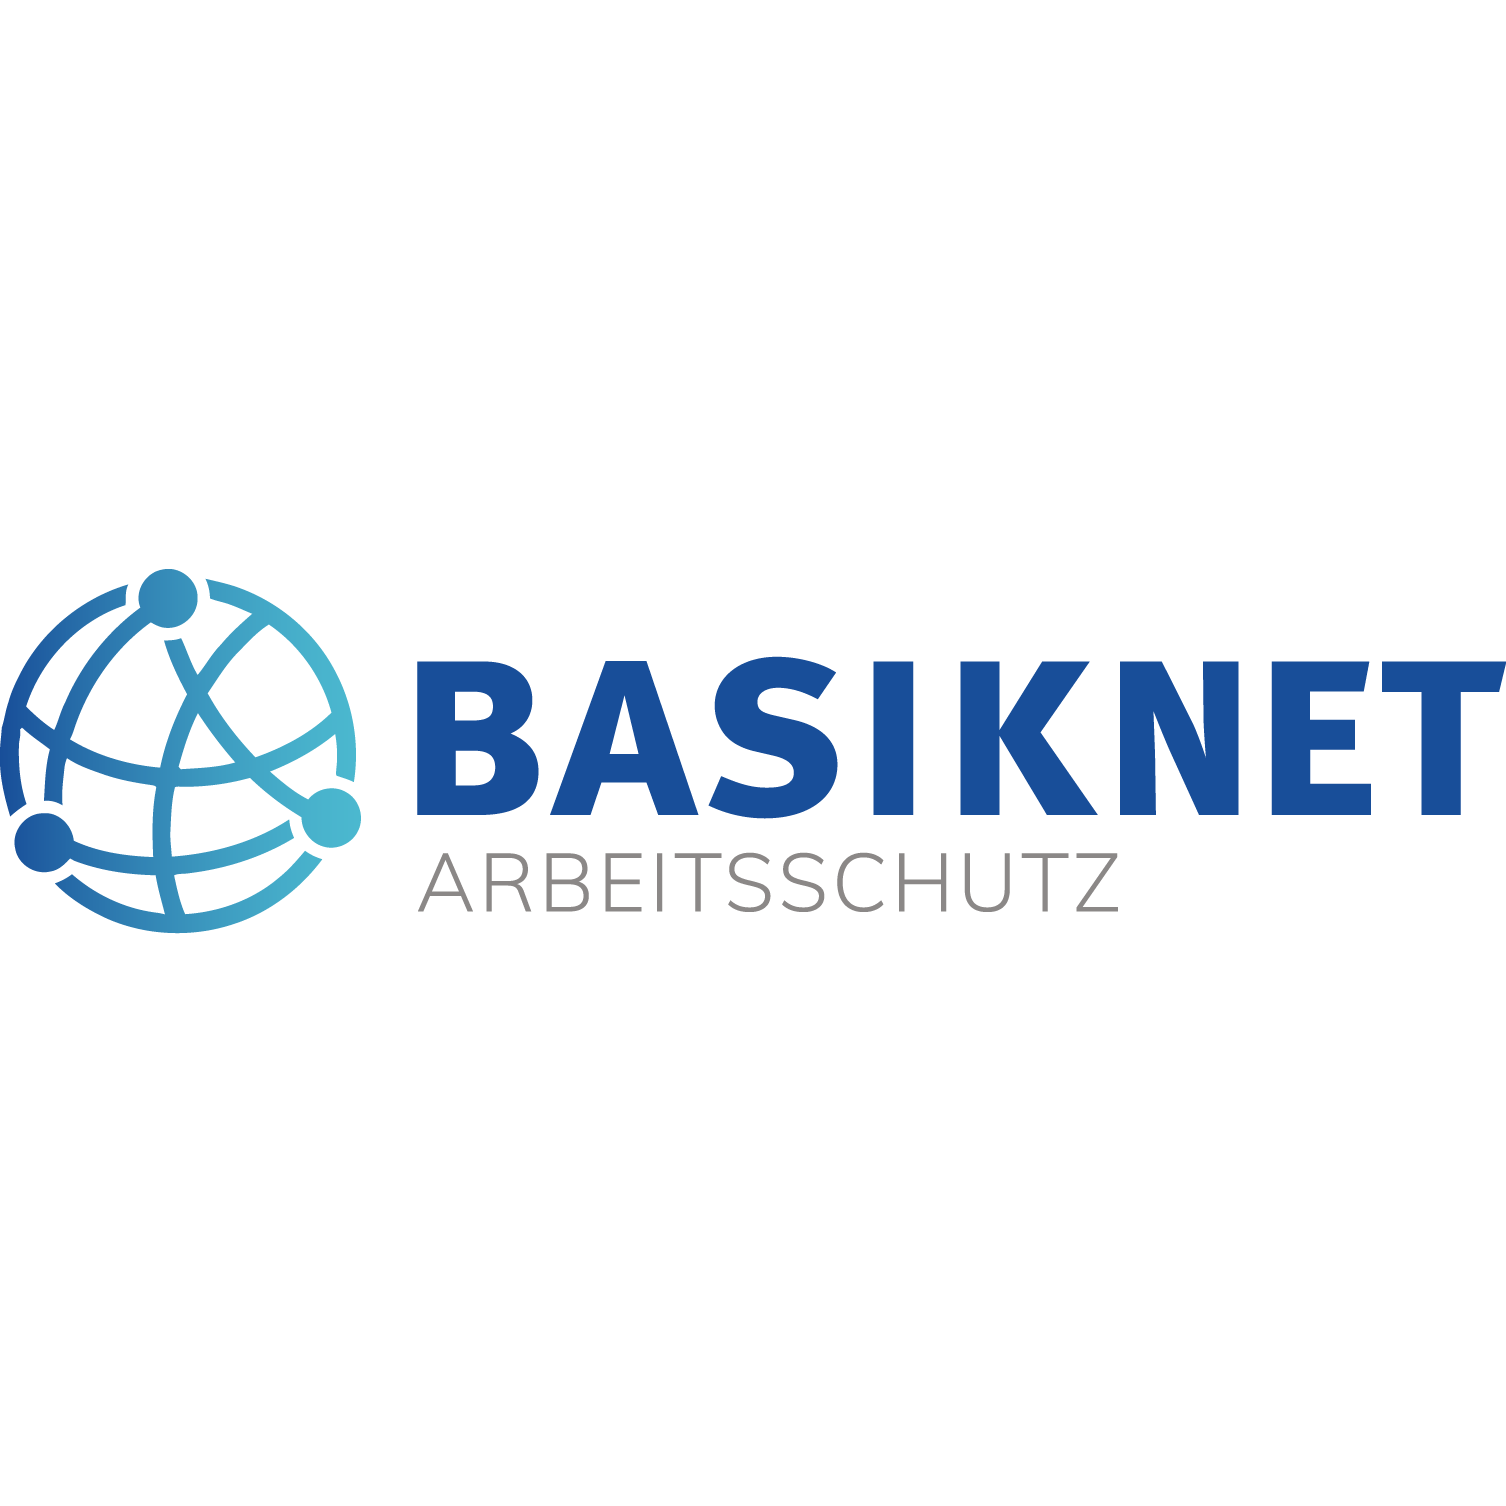 BASIKNET Gesellschaft für Arbeitsschutz mbH in Berlin - Logo